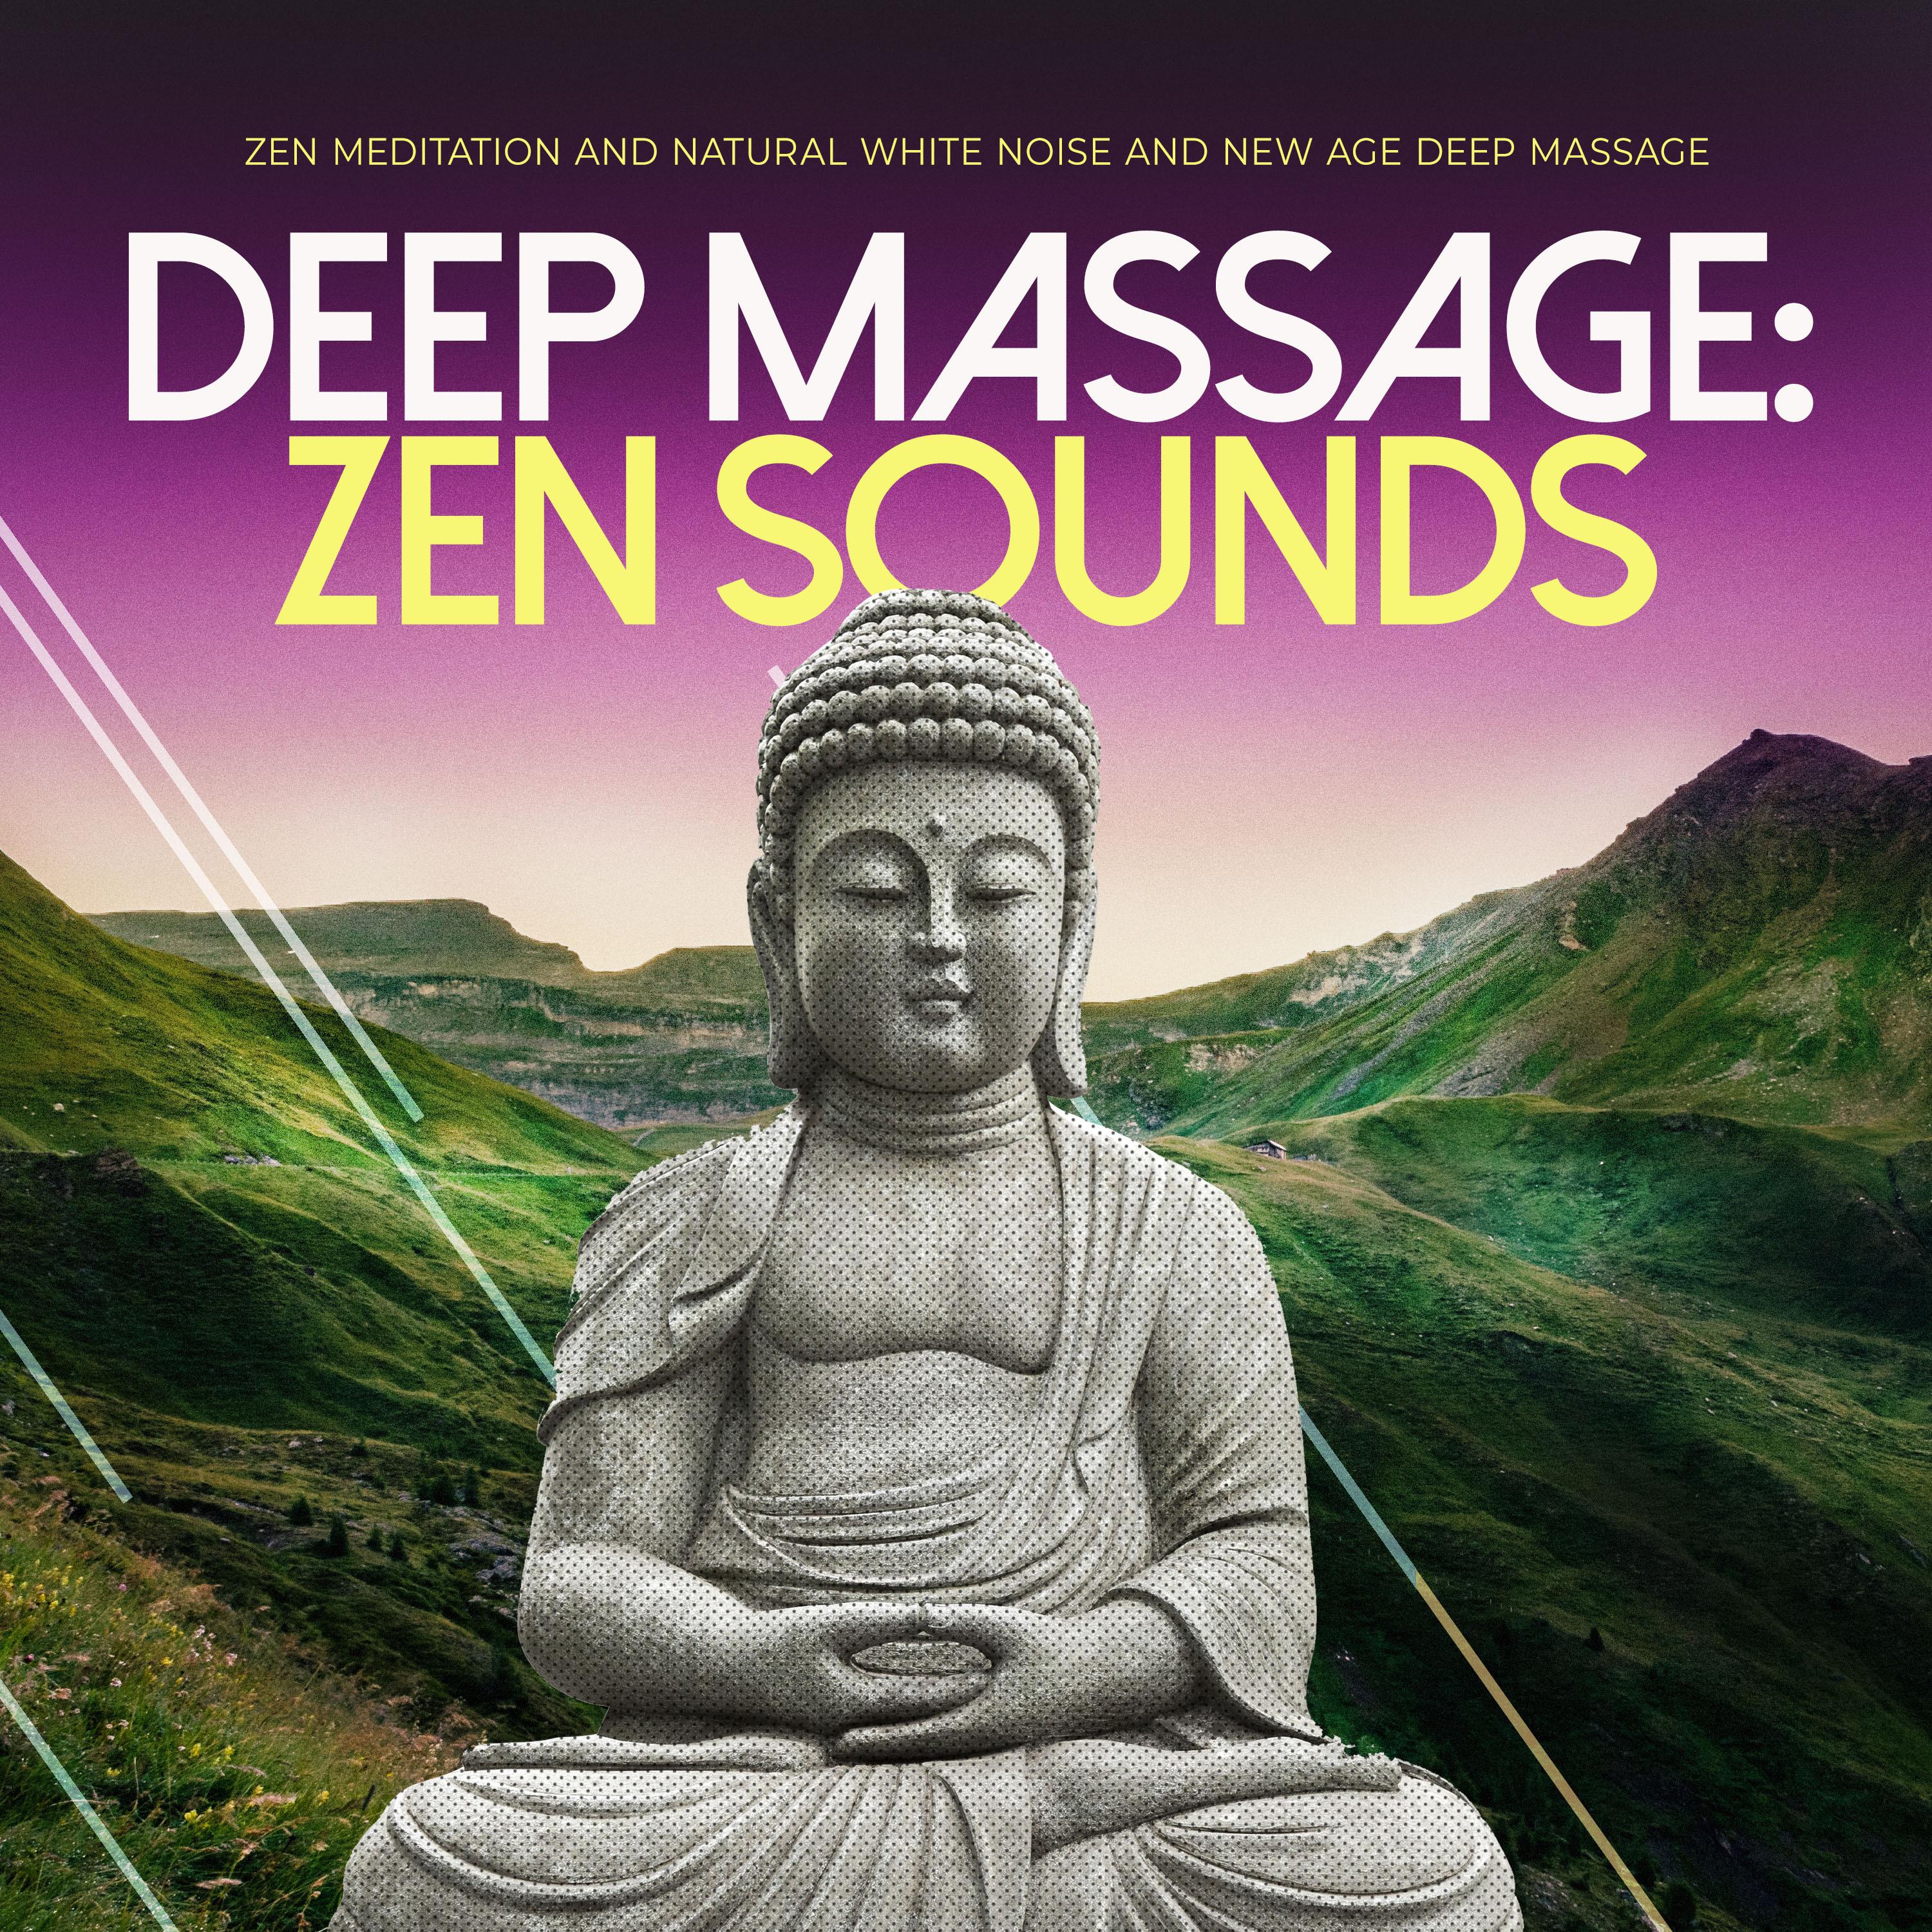 Deep Massage: Zen Sounds